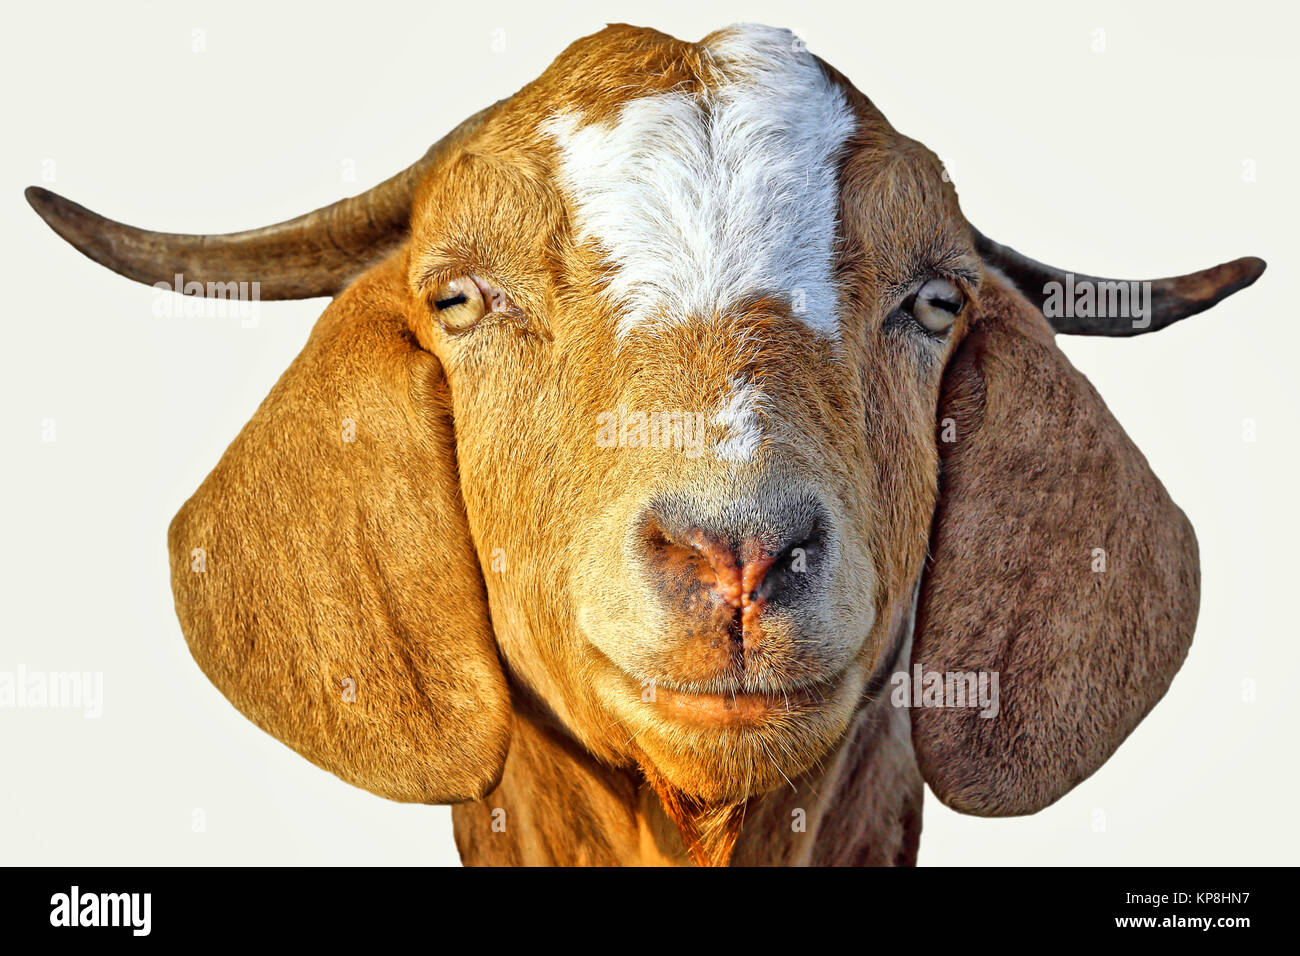 Boer goat Stock Photo